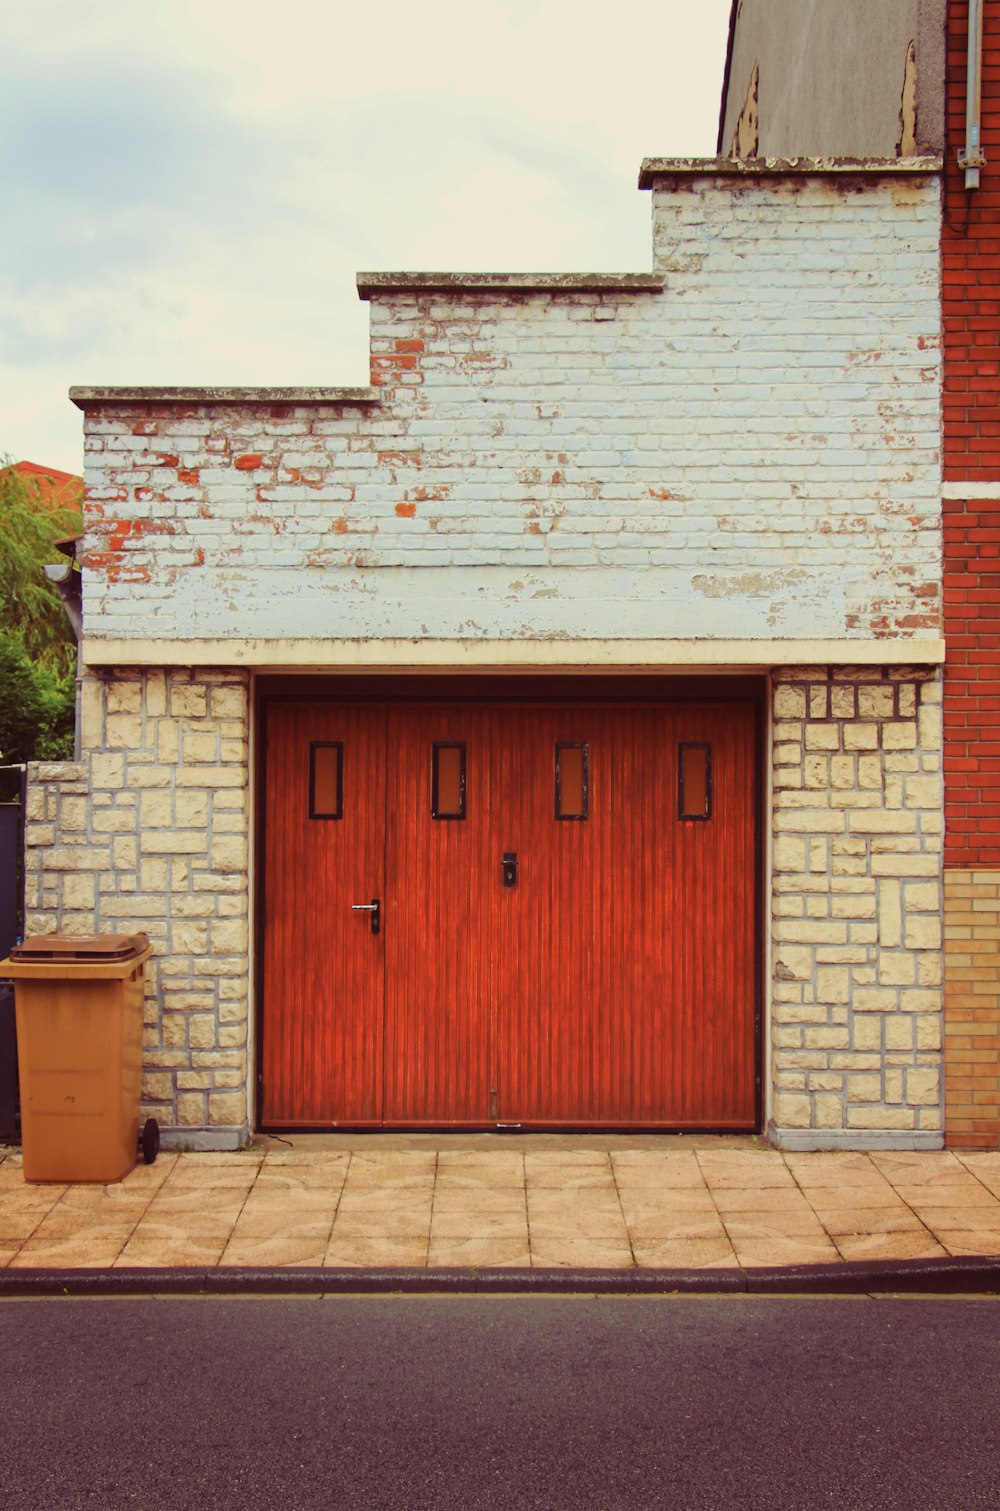 赤いドアとゴミ箱のあるレンガ造りの建物